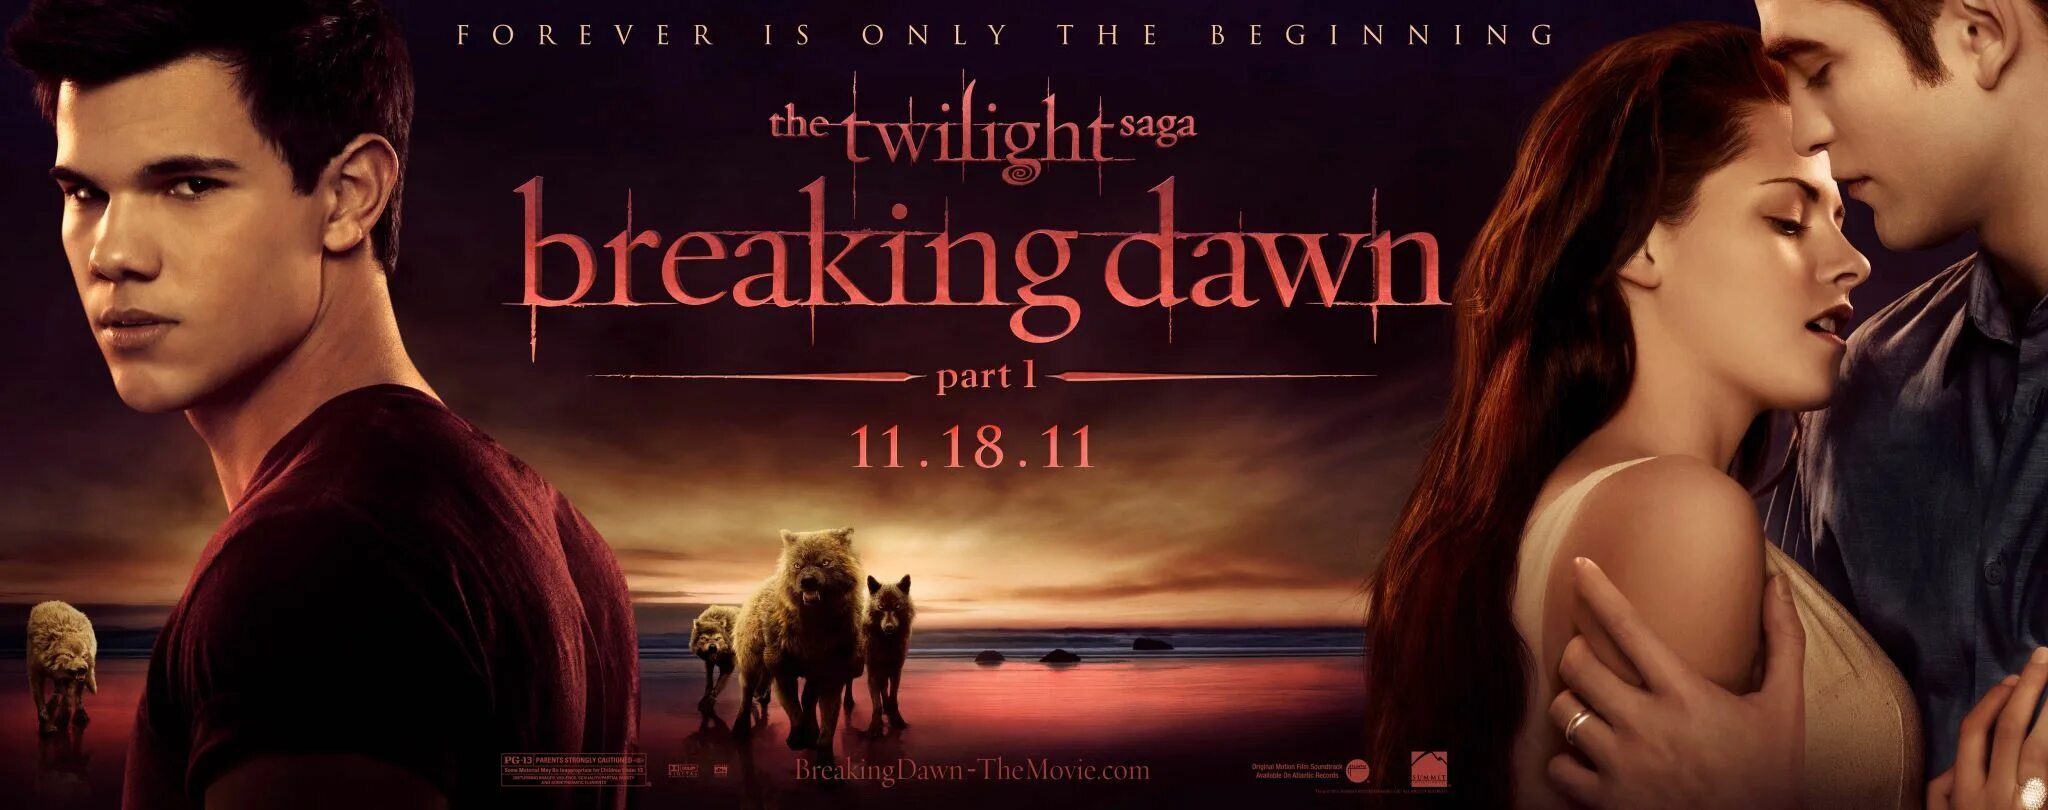 Сумерки 4 часть 1 2. Сумерки. Сага. Рассвет. Часть 1 - the Twilight Saga. Breaking Dawn - Part 1 (2011). Сумерки сага рассвет часть 1 обложка. Сумерки рассвет часть 1 Постер.